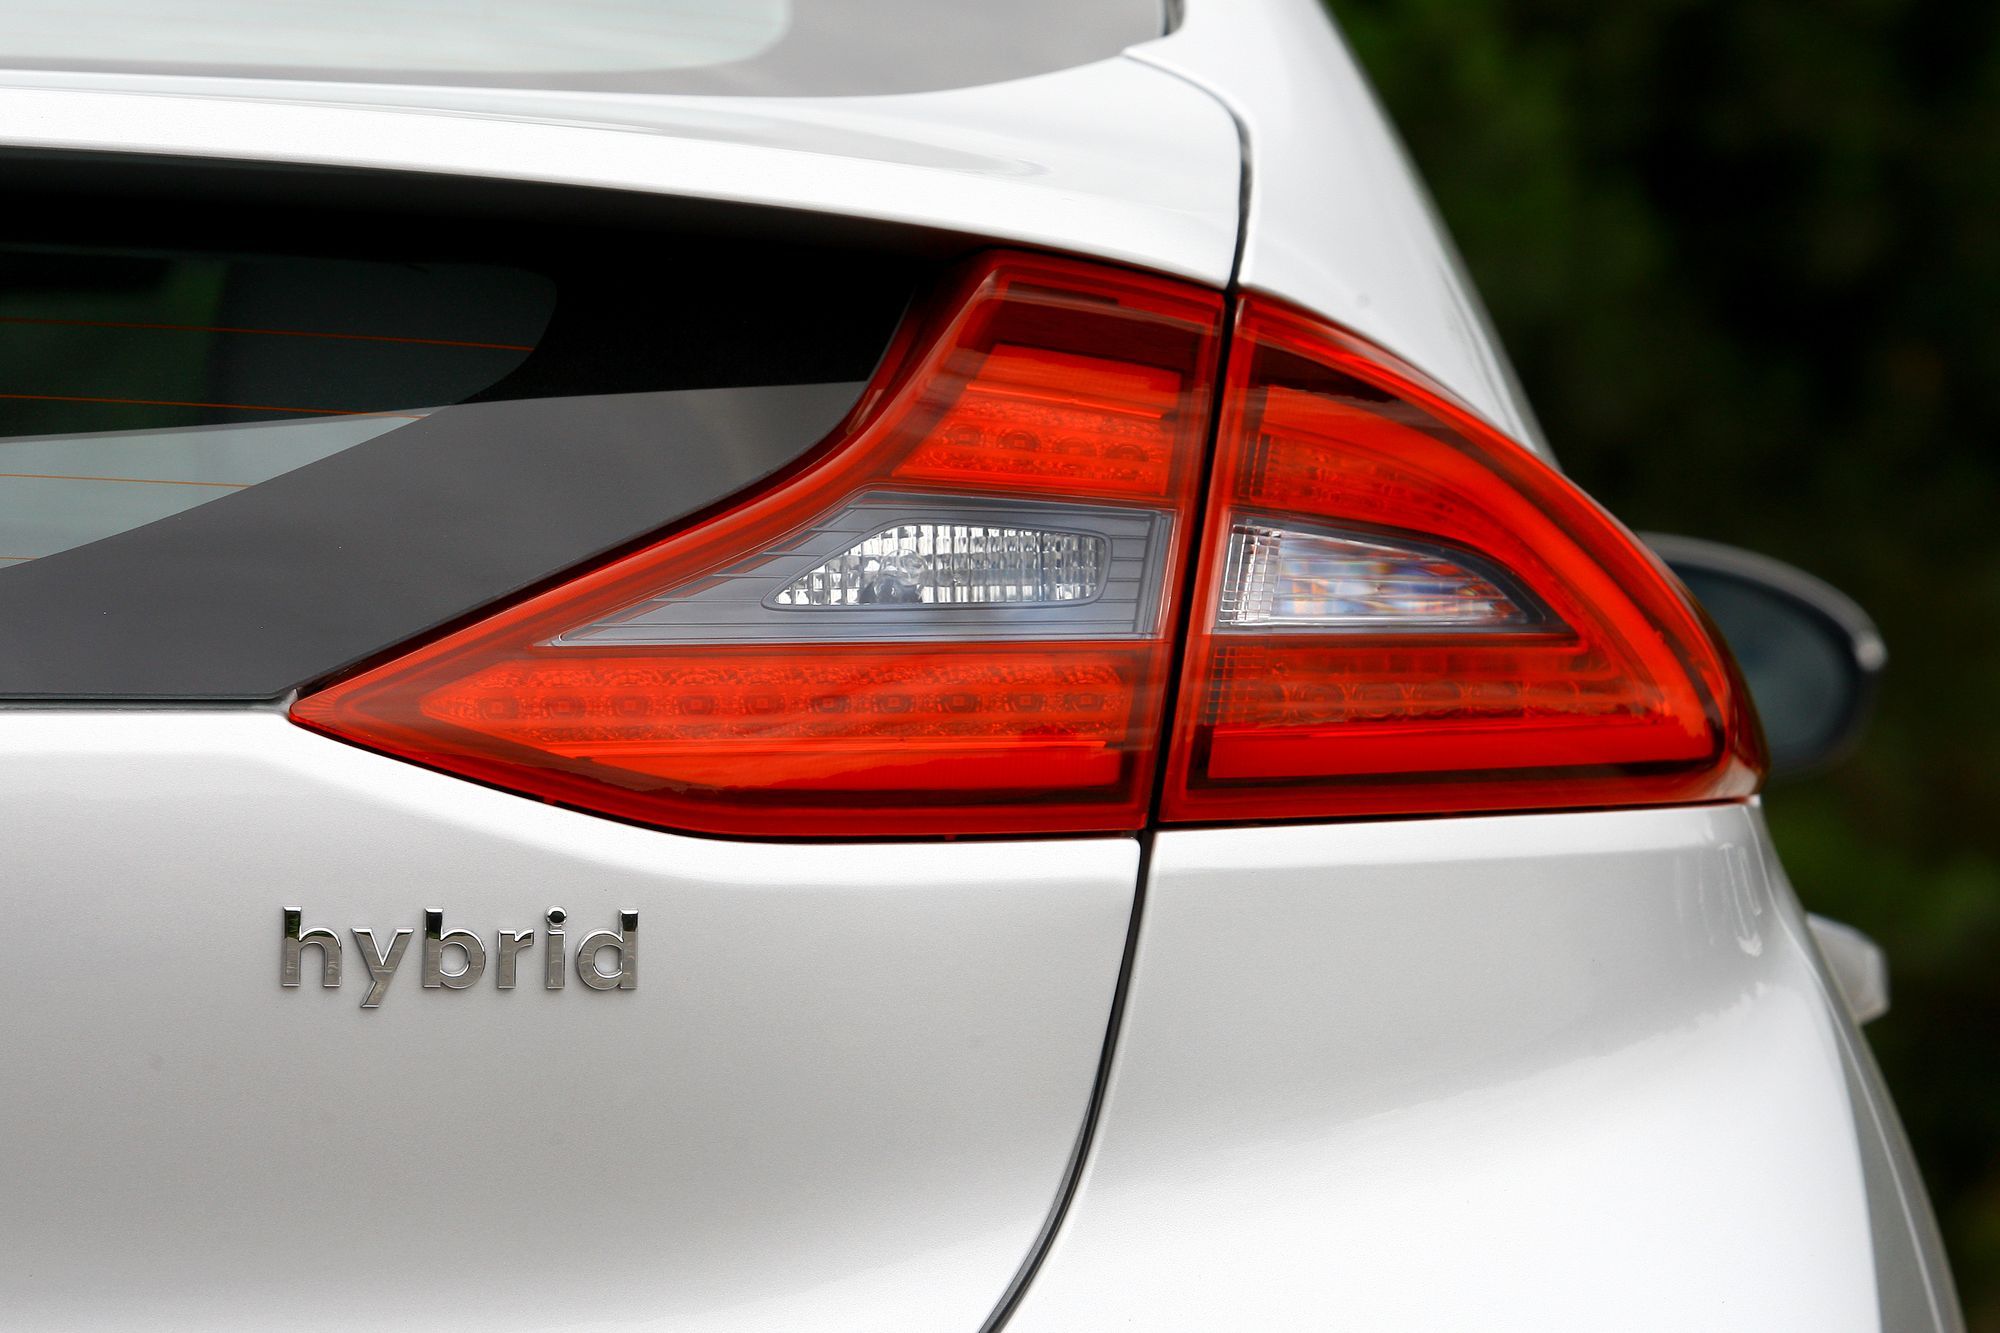 Hybrid Cars 101